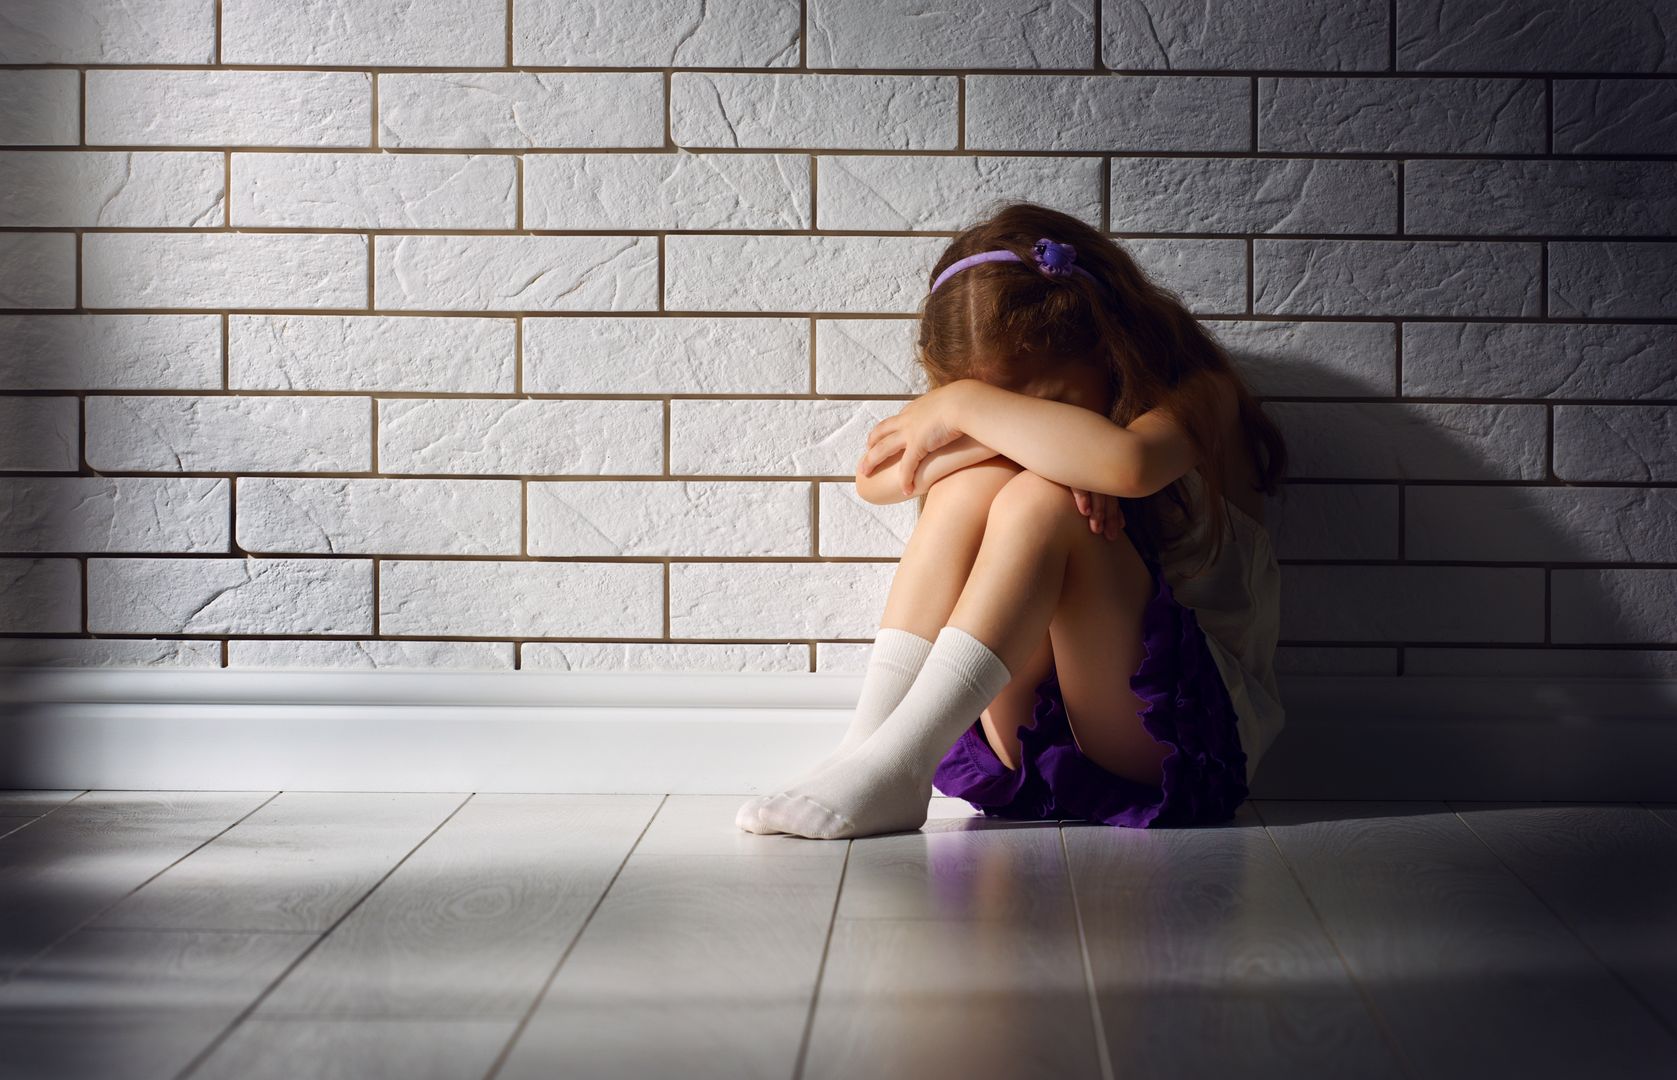 6-letnia dziewczynka ofiarą ataku seksualnego. Sprawcami dwaj 7-latkowie